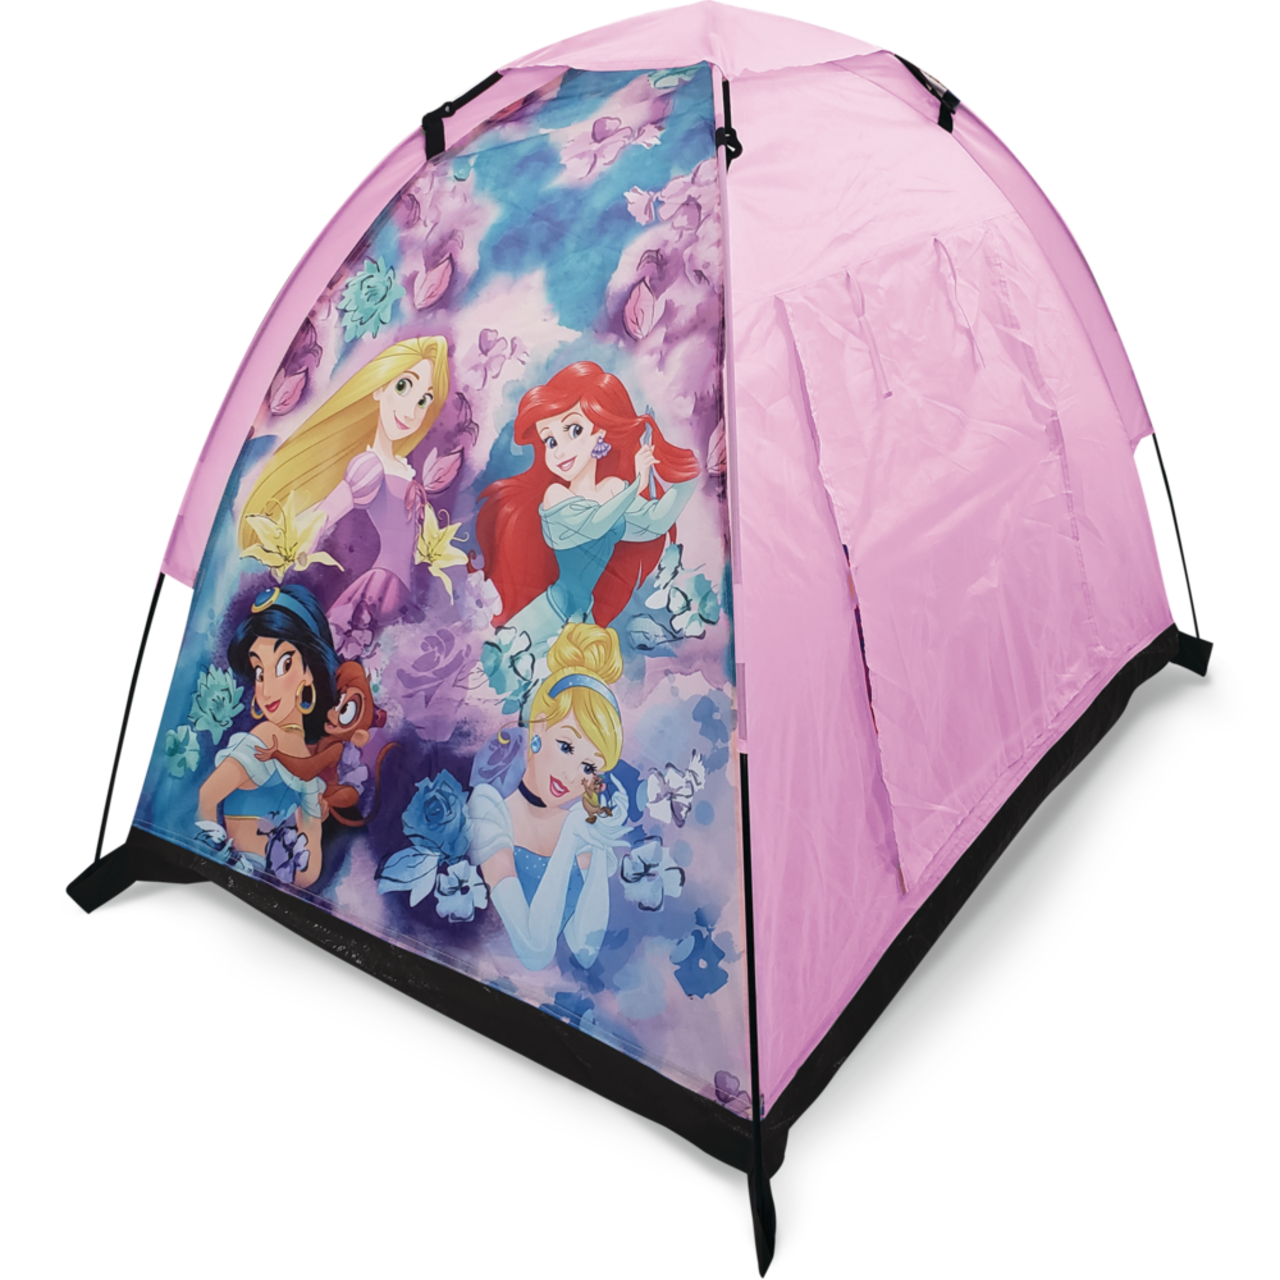 Tente pour Enfants Ensemble de jouets de camping pour enfants de 20 pices  avec tente de jeu pop-up intrieure et extrieure